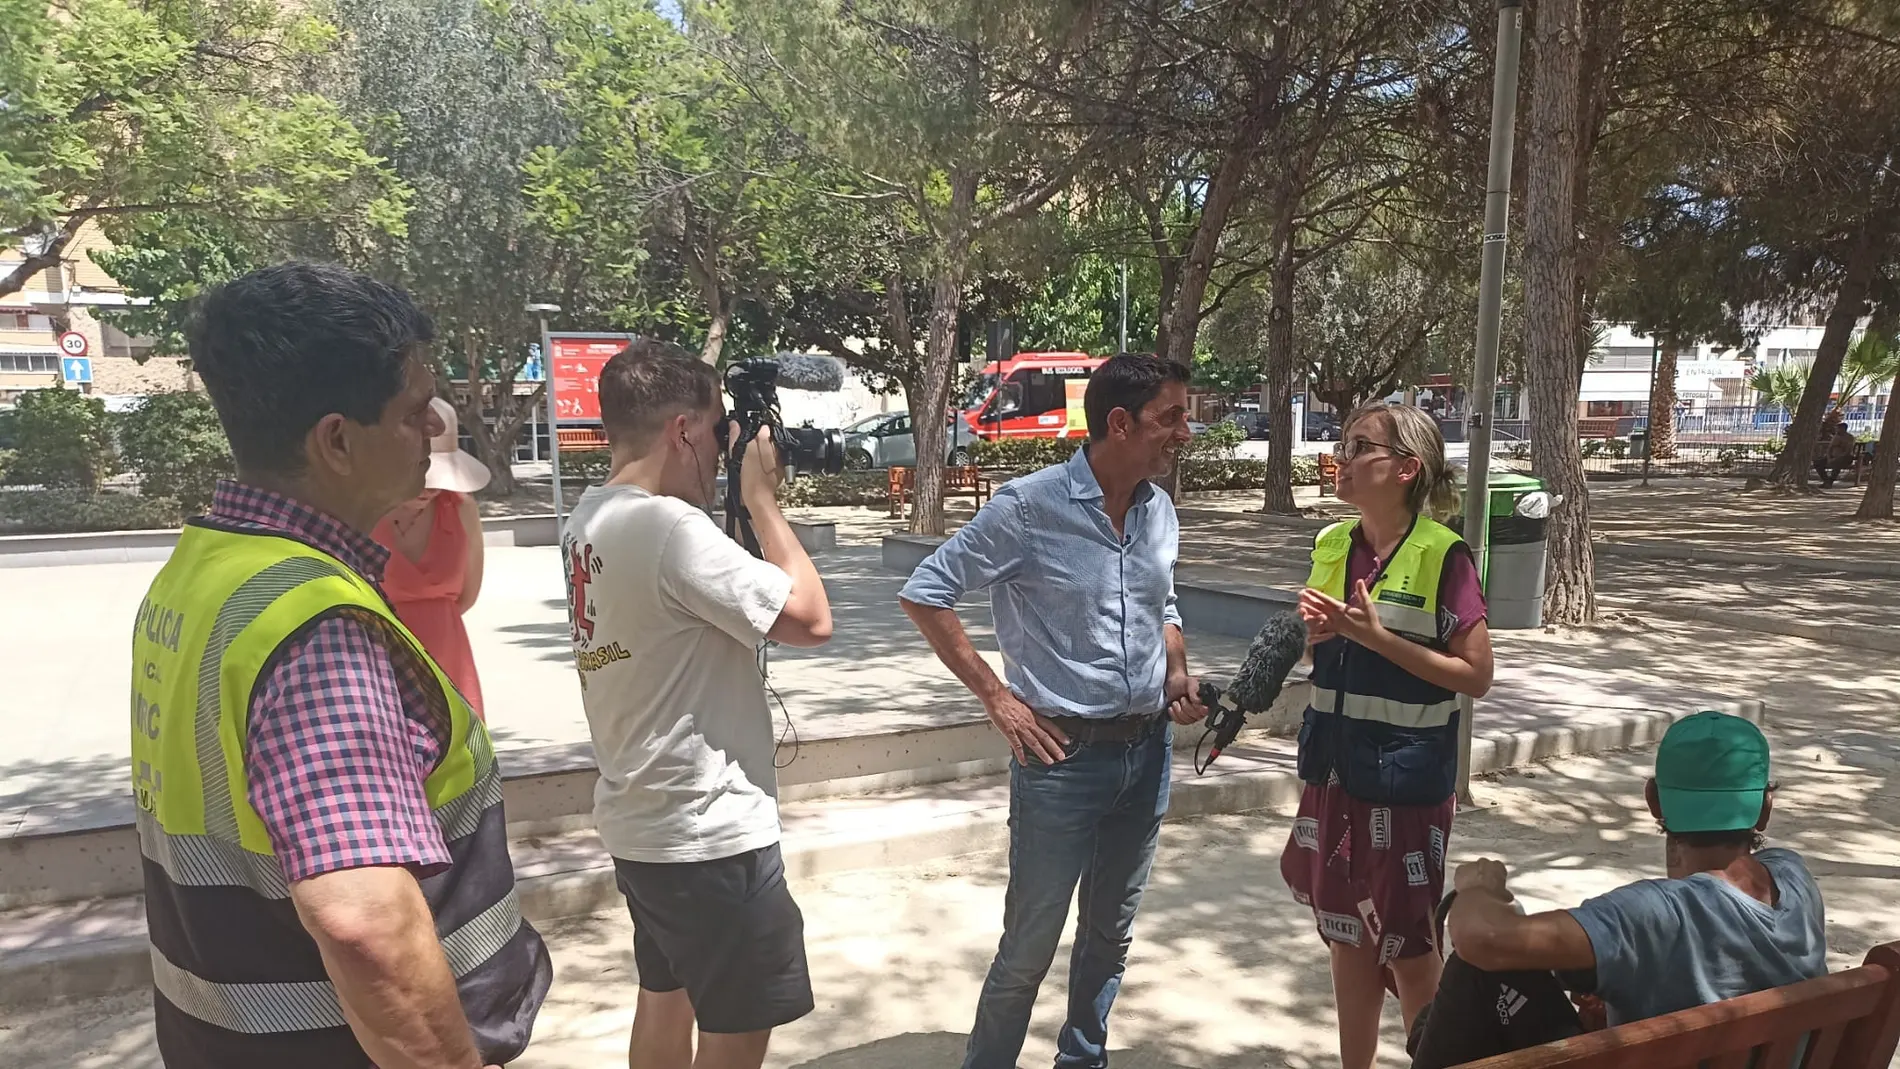 La BBC se hace eco de la labor del SEMAS durante la ola de calor en Murcia